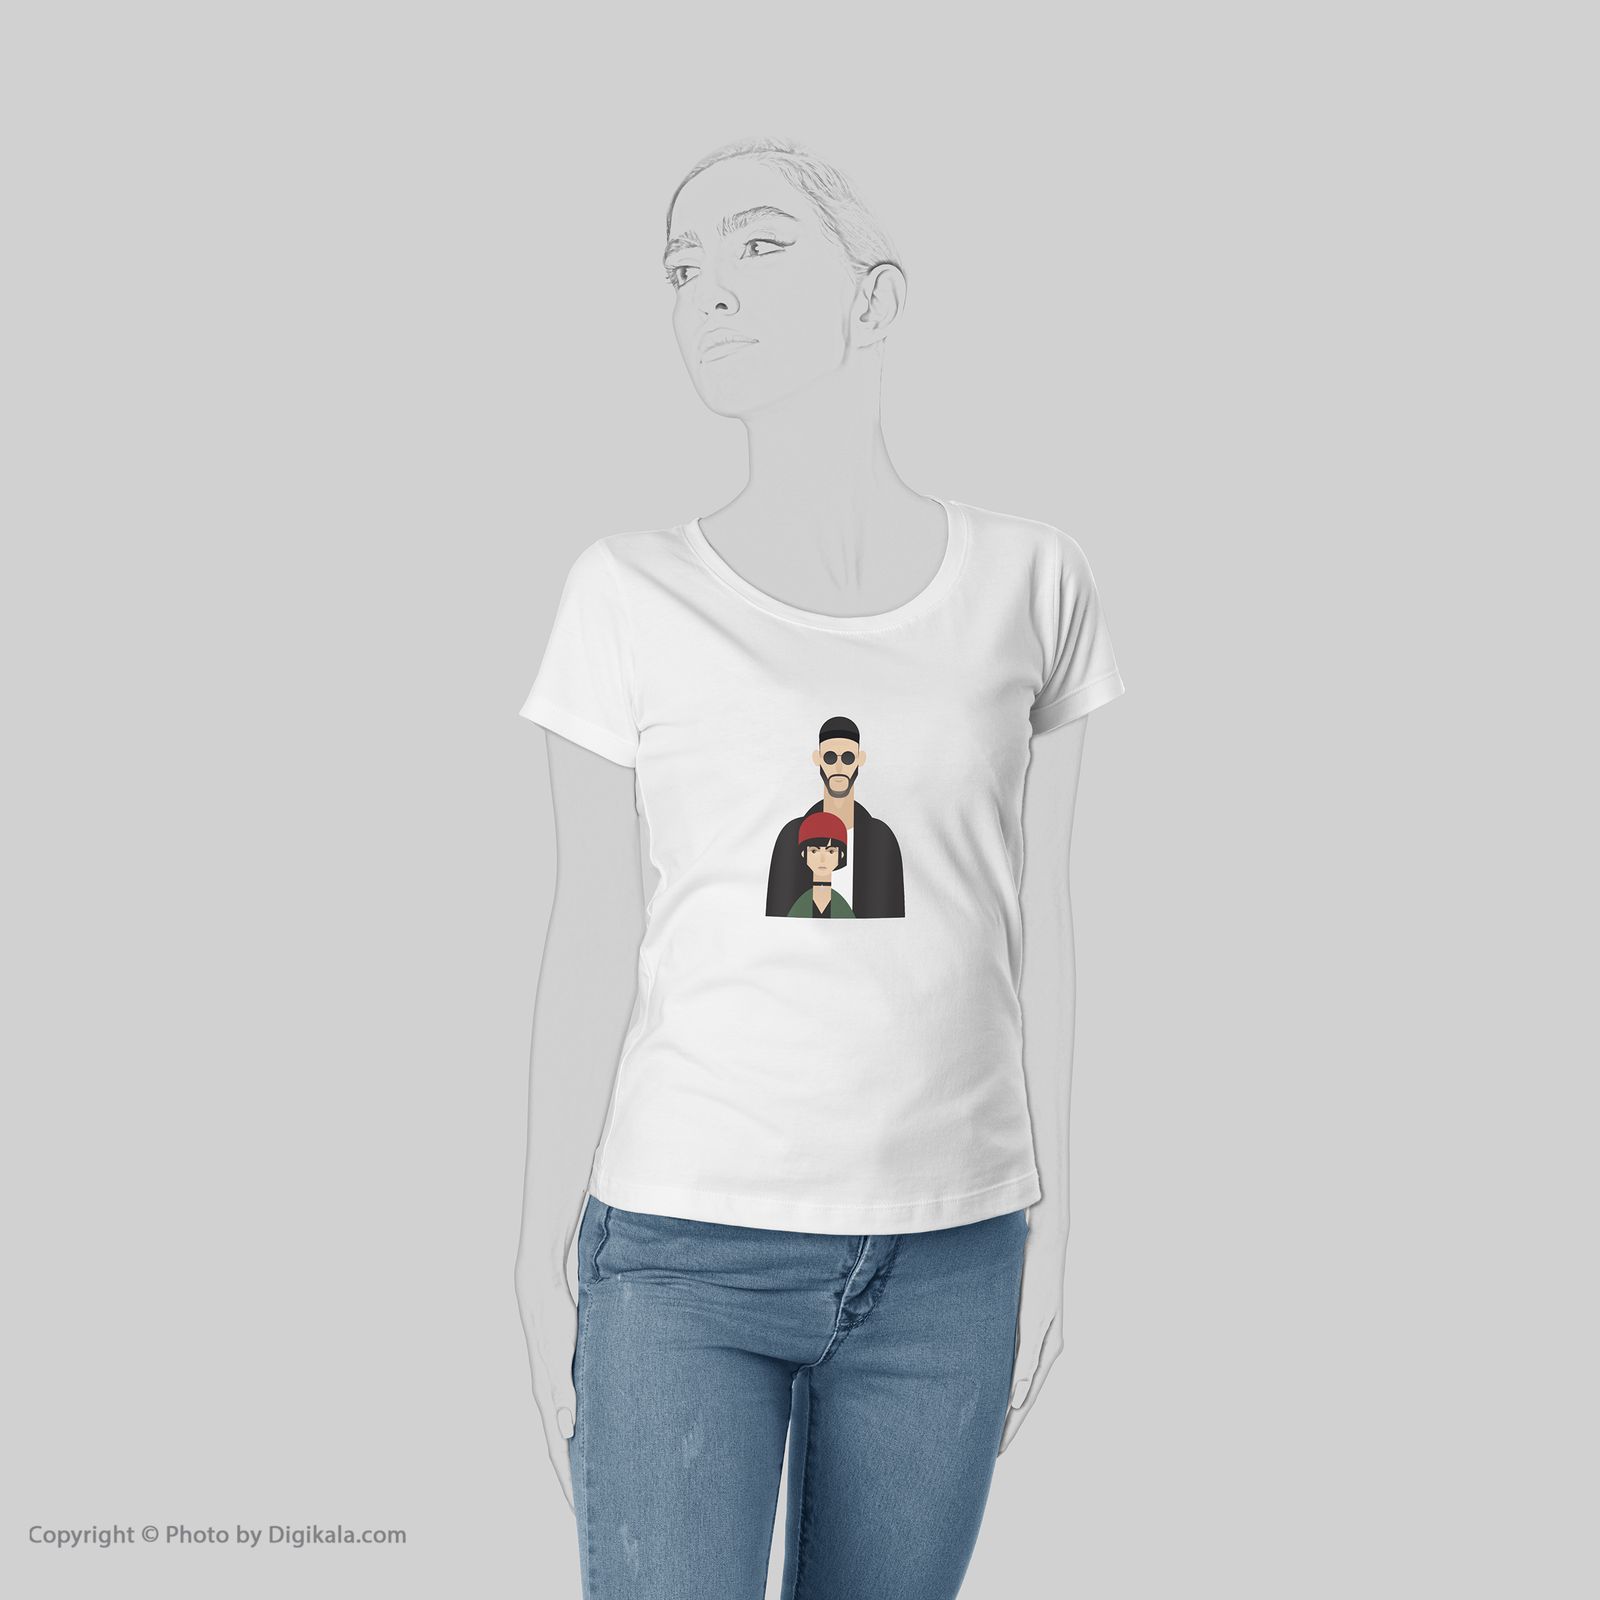 تی شرت زنانه به رسم طرح لِون کد 5573 -  - 5